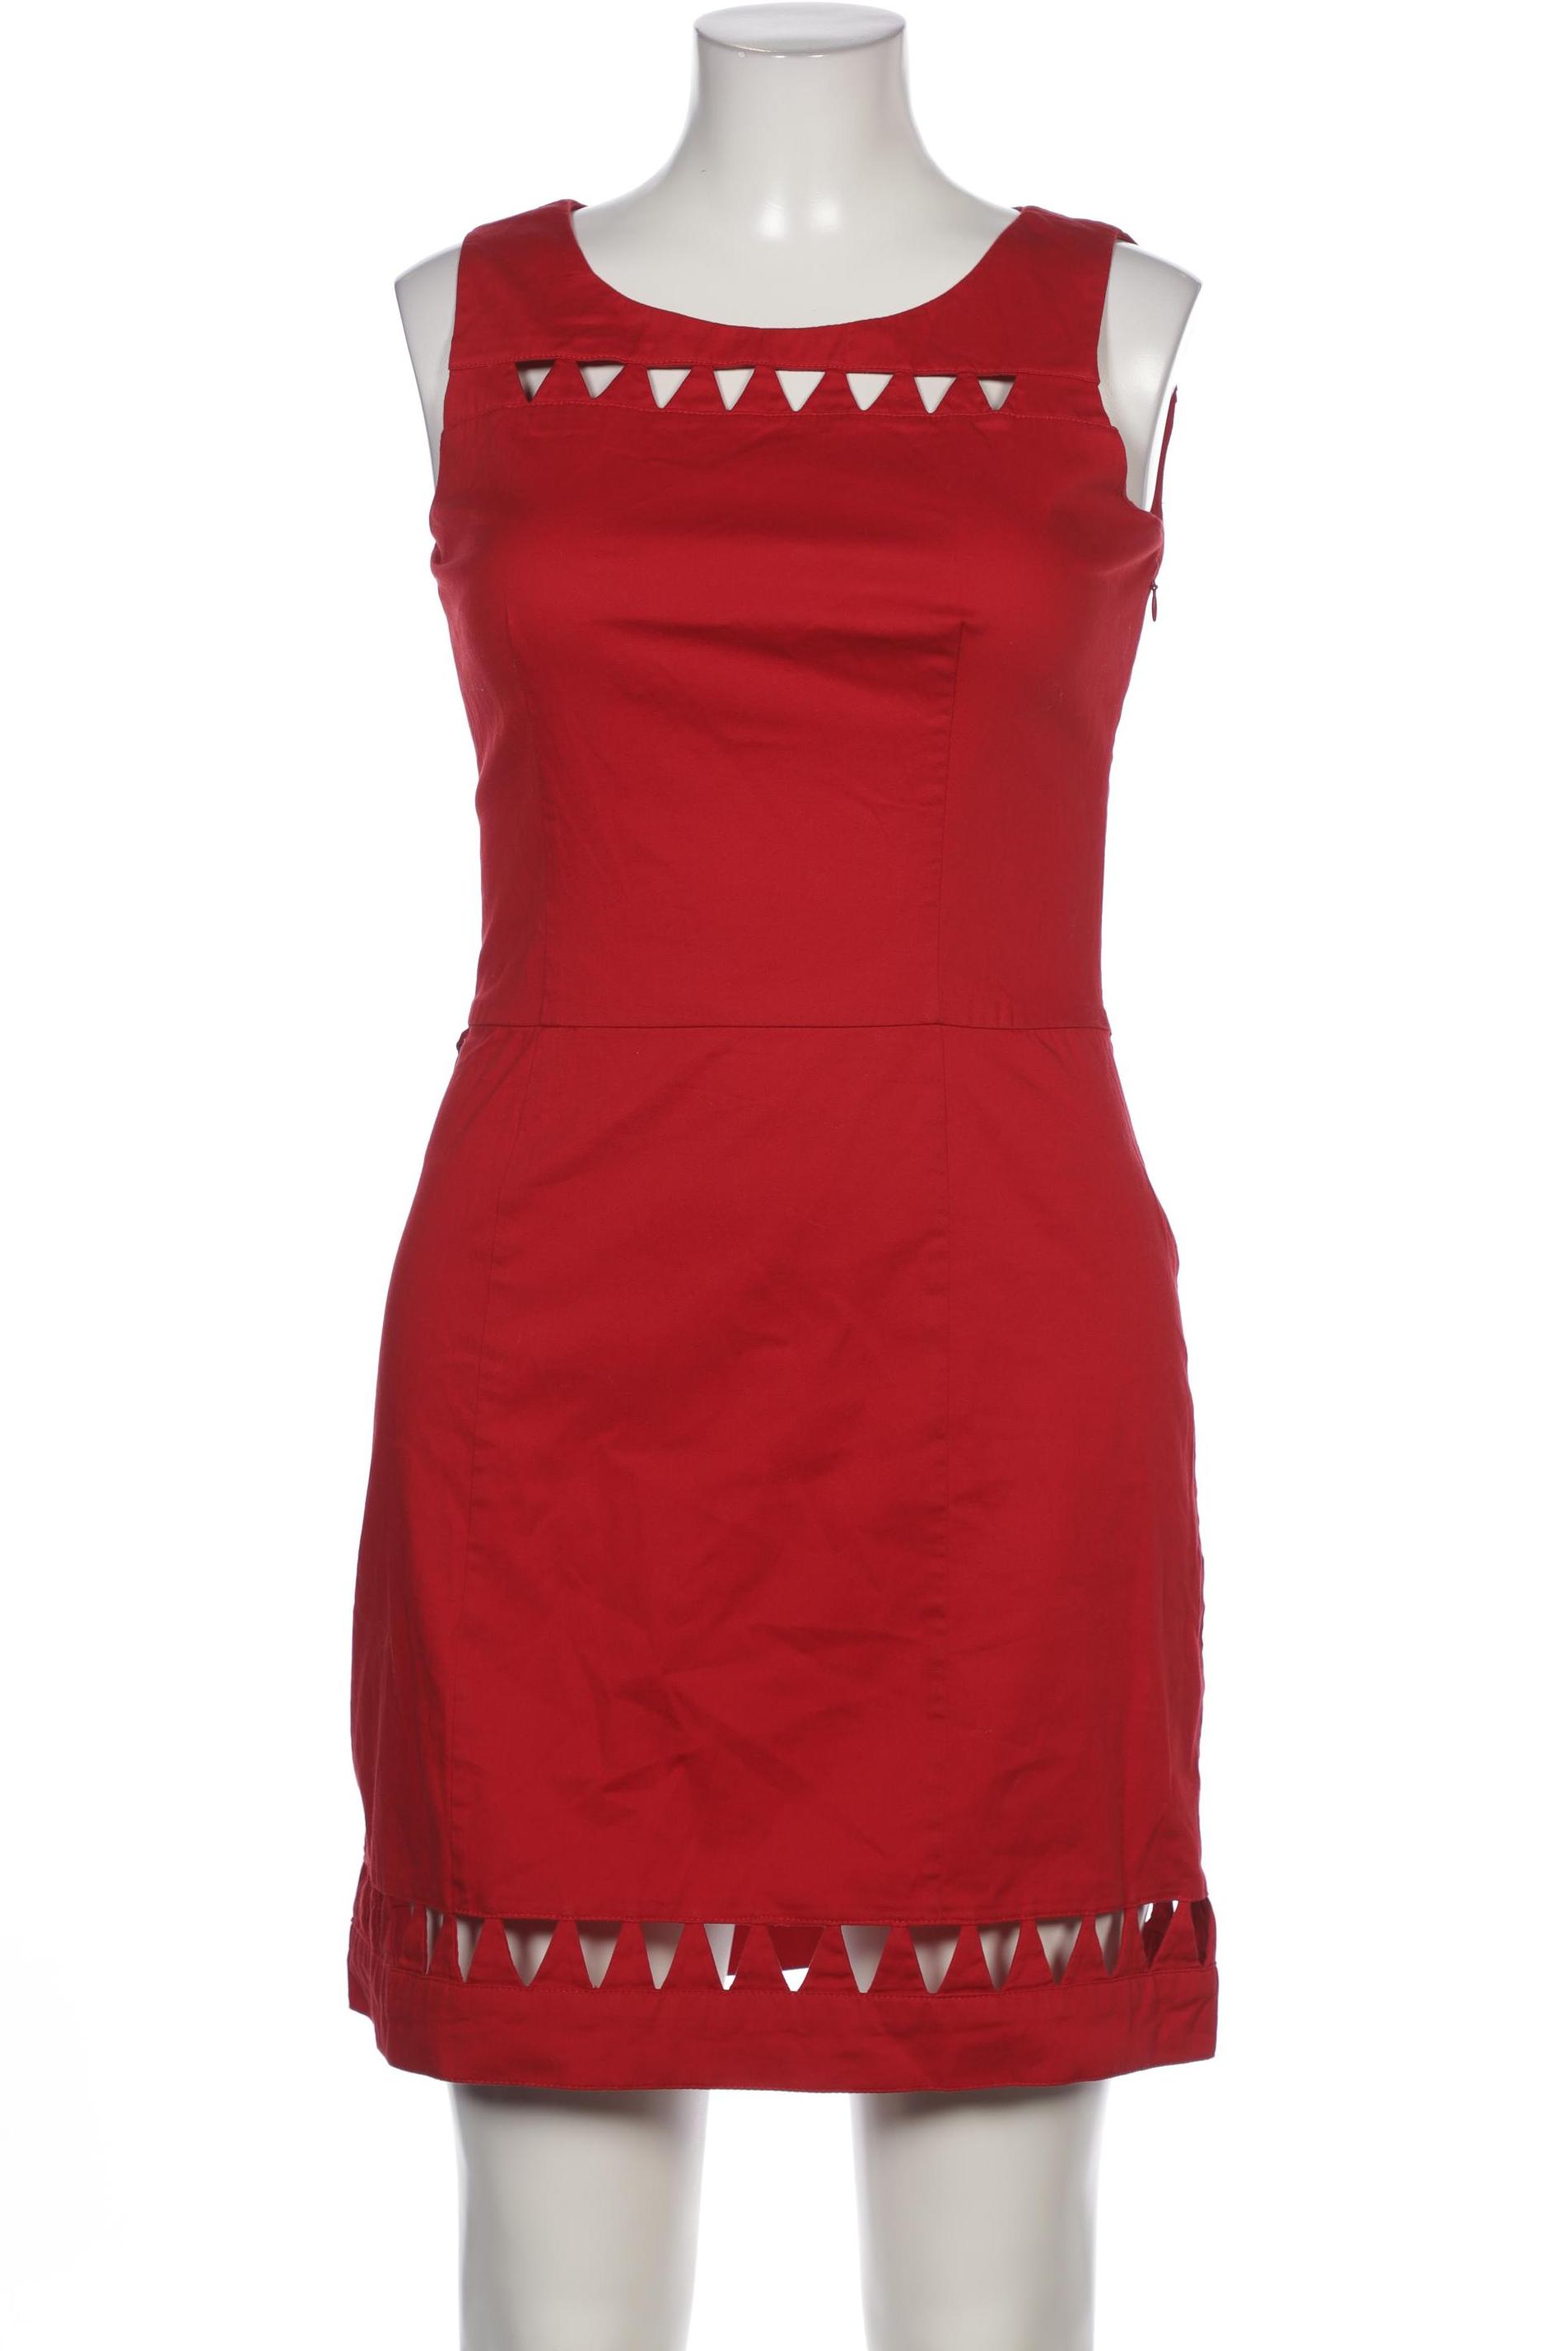 Skfk Damen Kleid, rot, Gr. 42 von SKFK